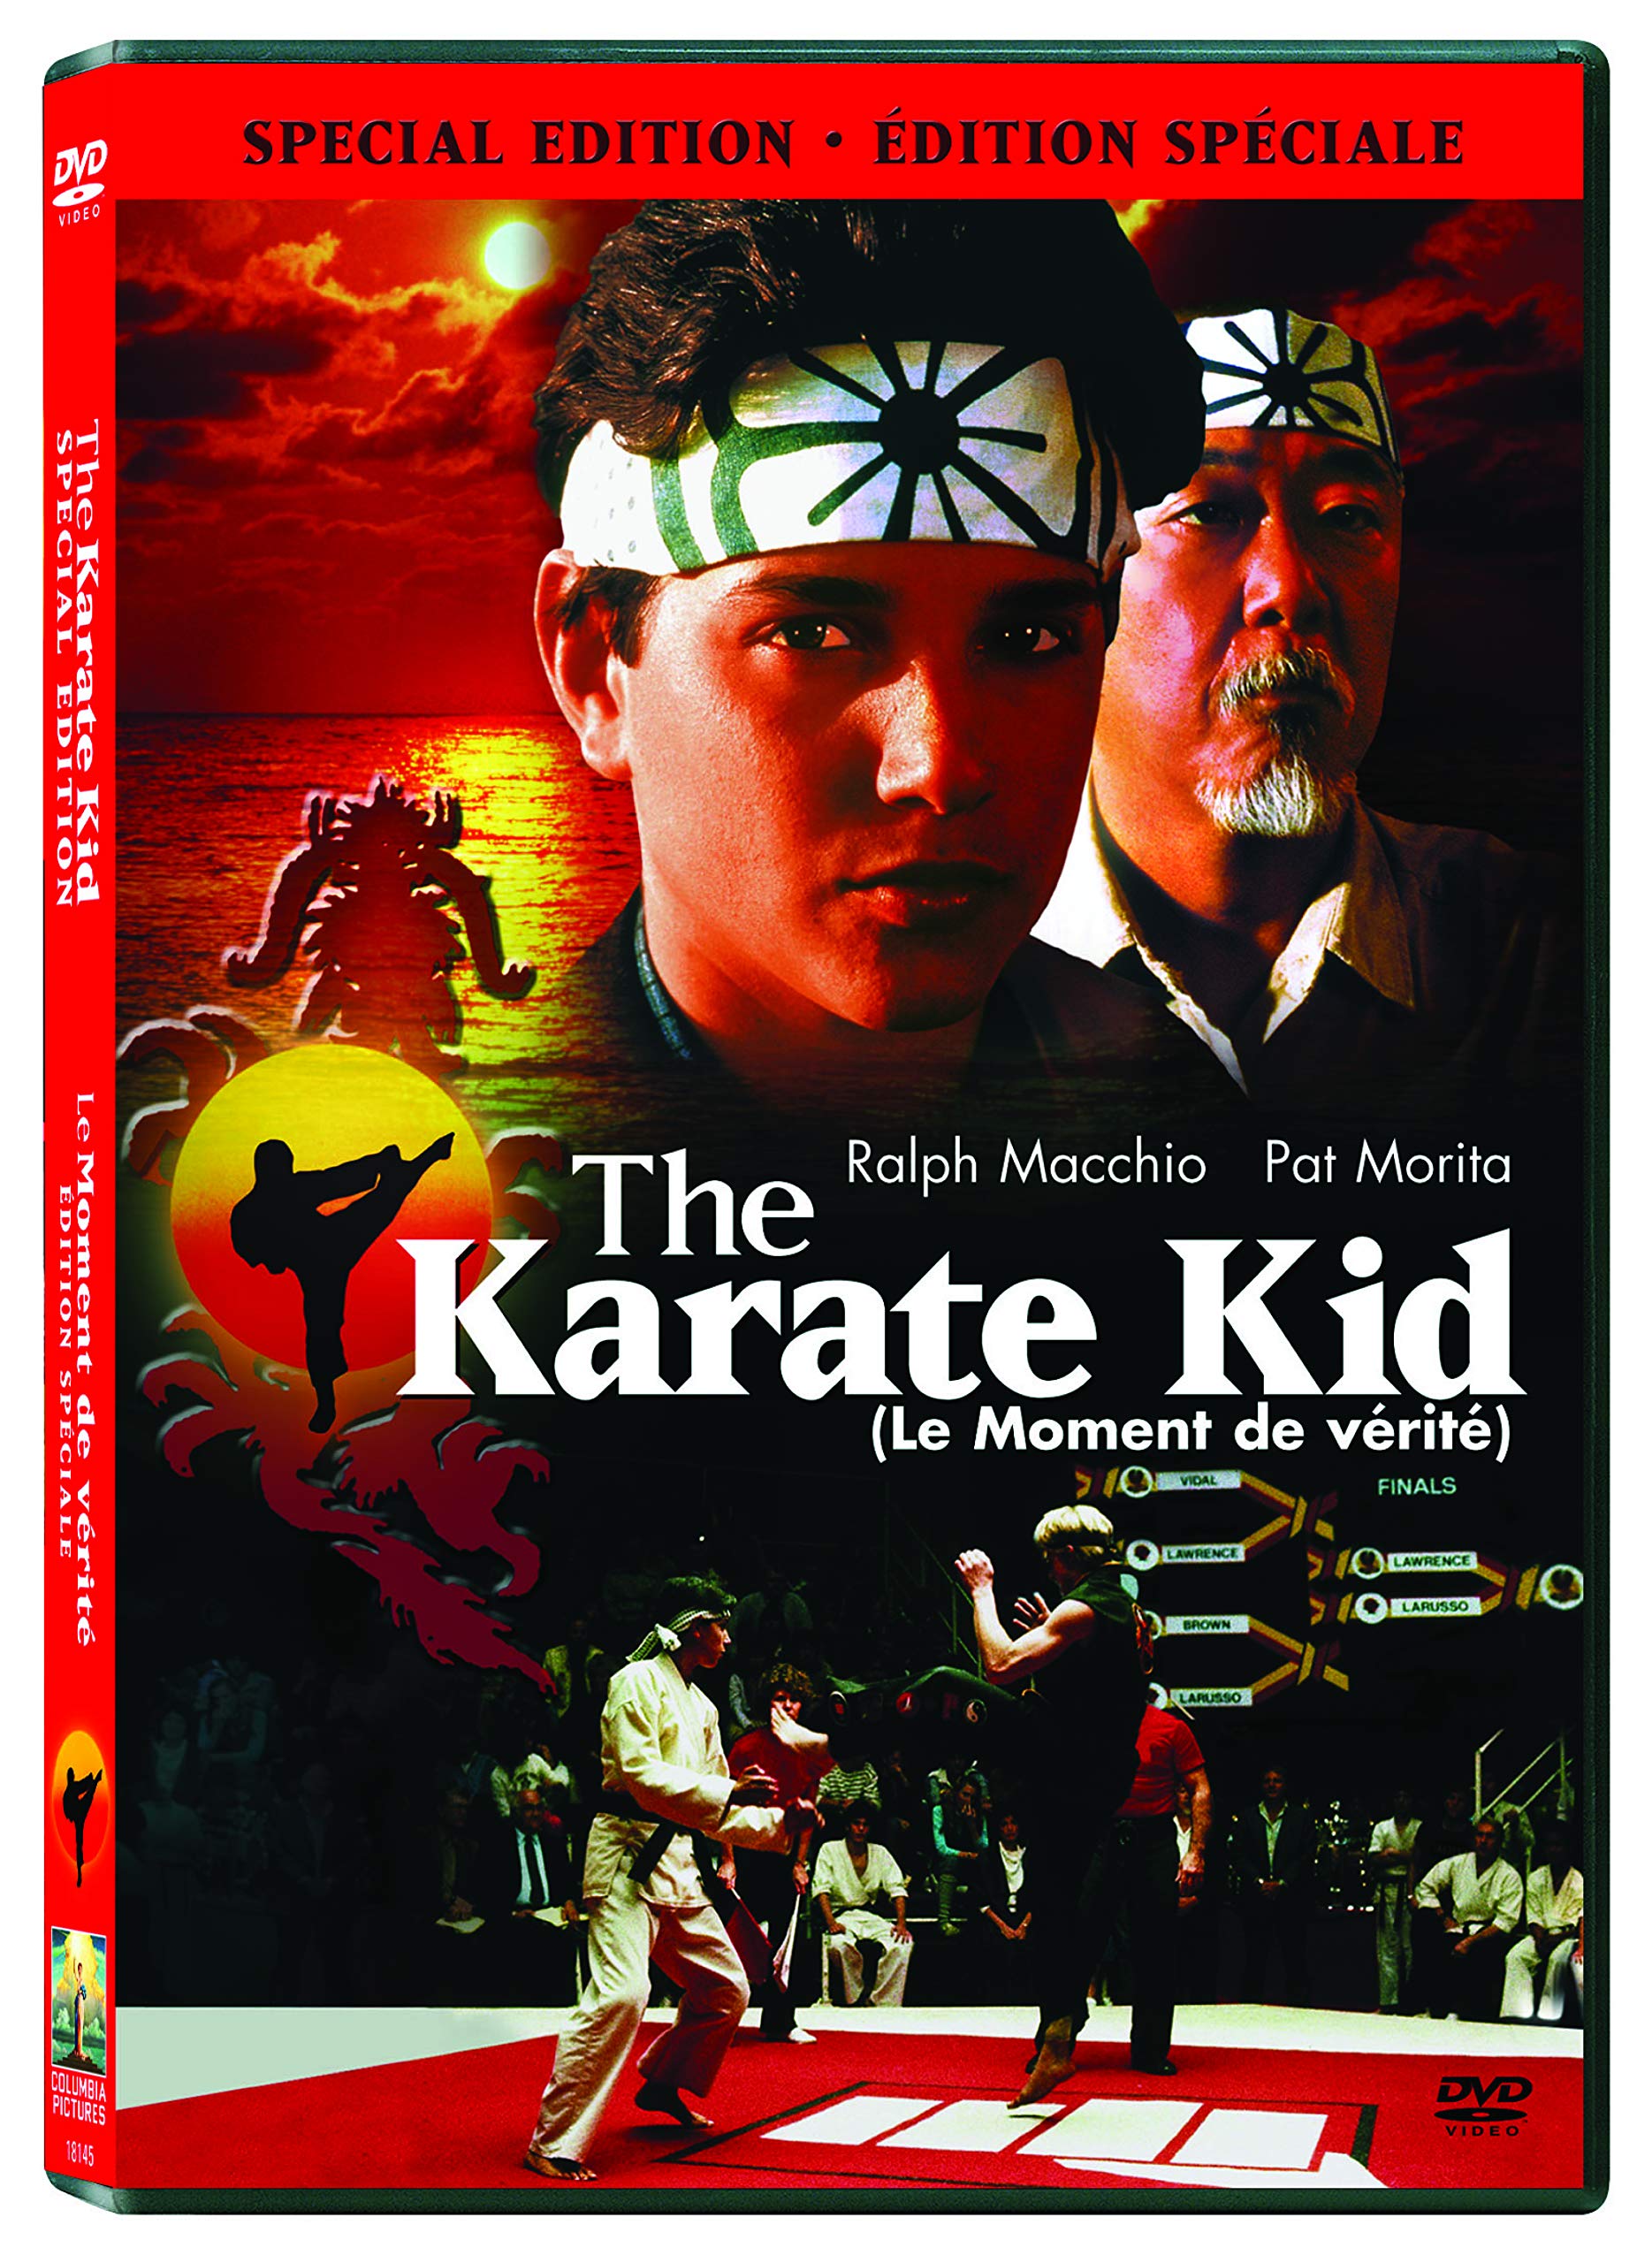 KARATE KID THE (1984) on MovieShack